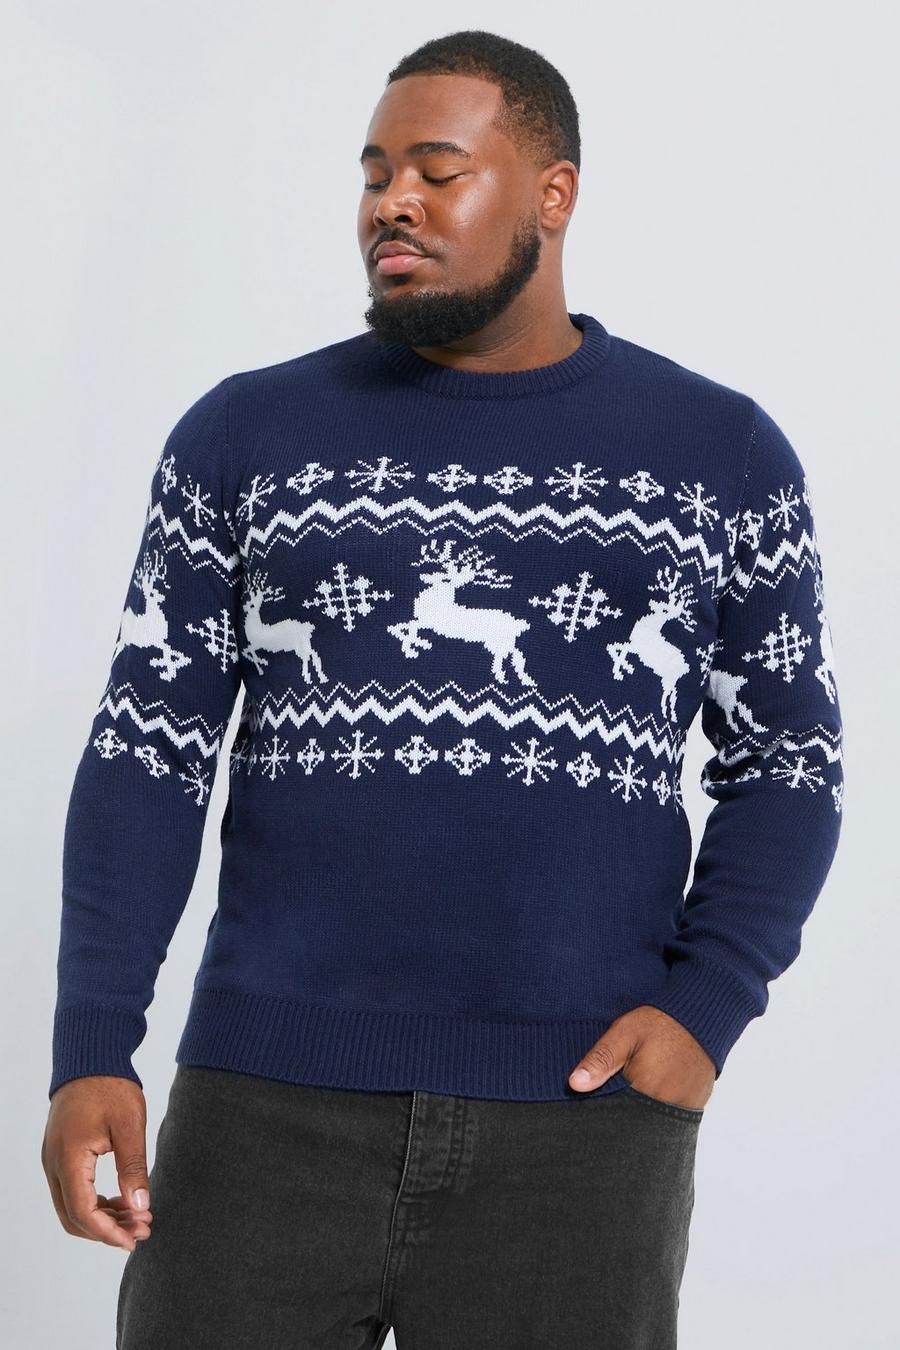 Maglione natalizio Plus Size con renne, pannelli e motivi Fairisle, Navy azul marino